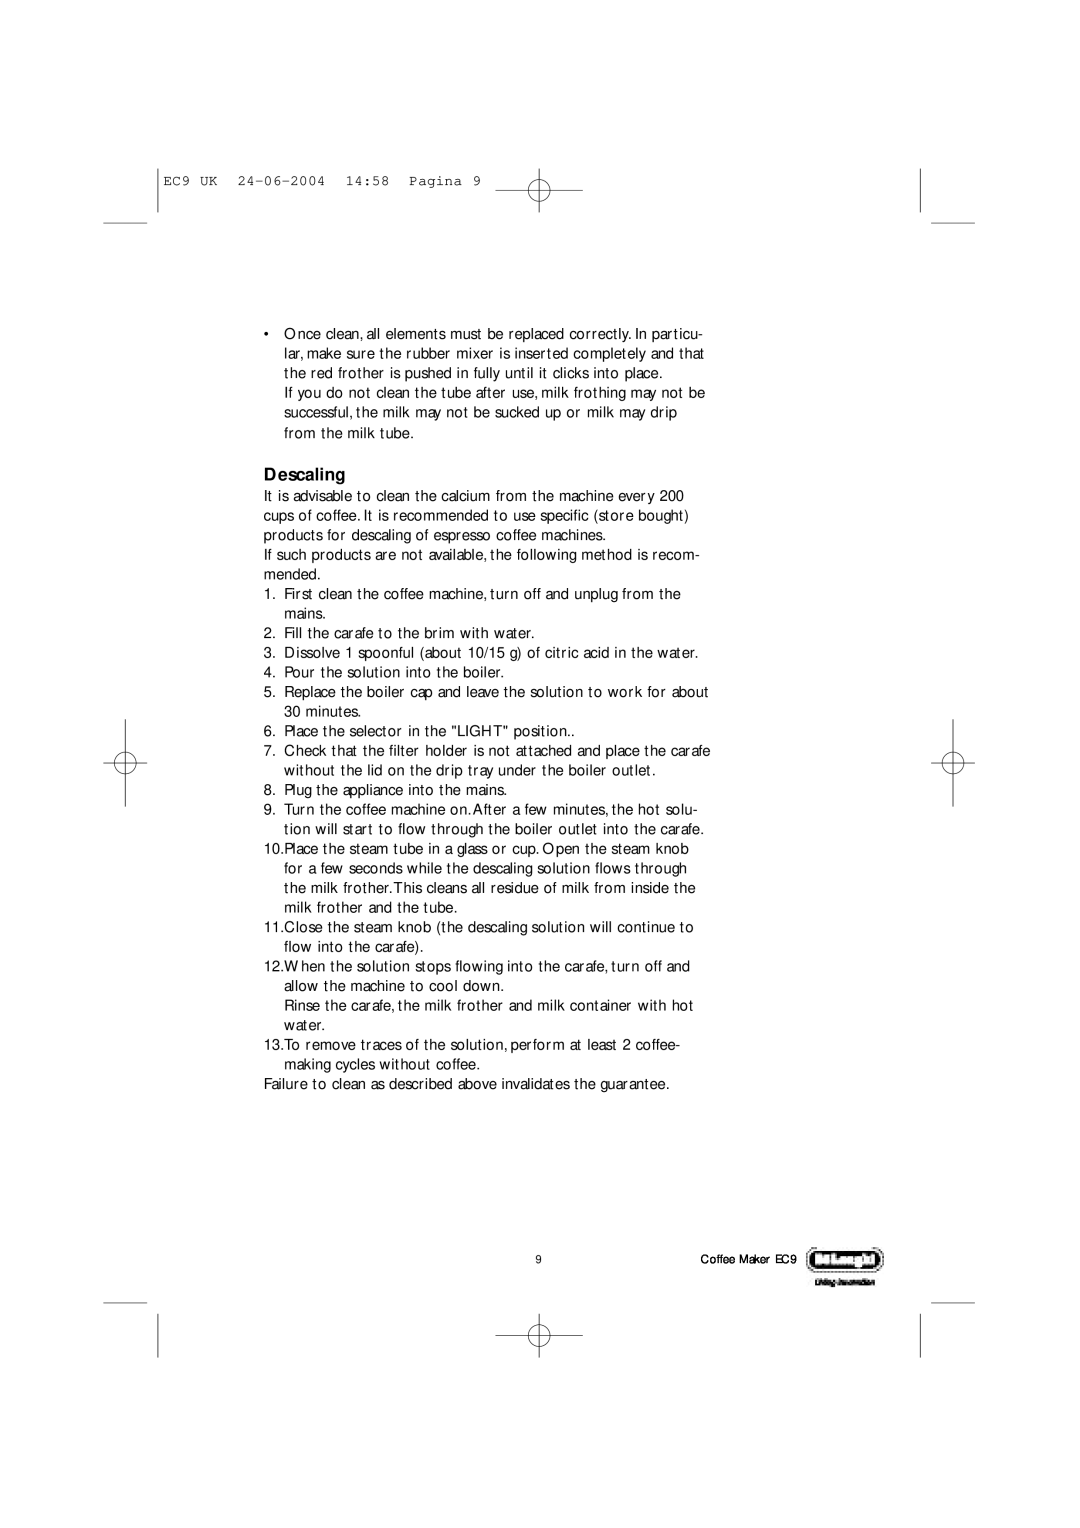 DeLonghi EC9 UK manual Descaling 